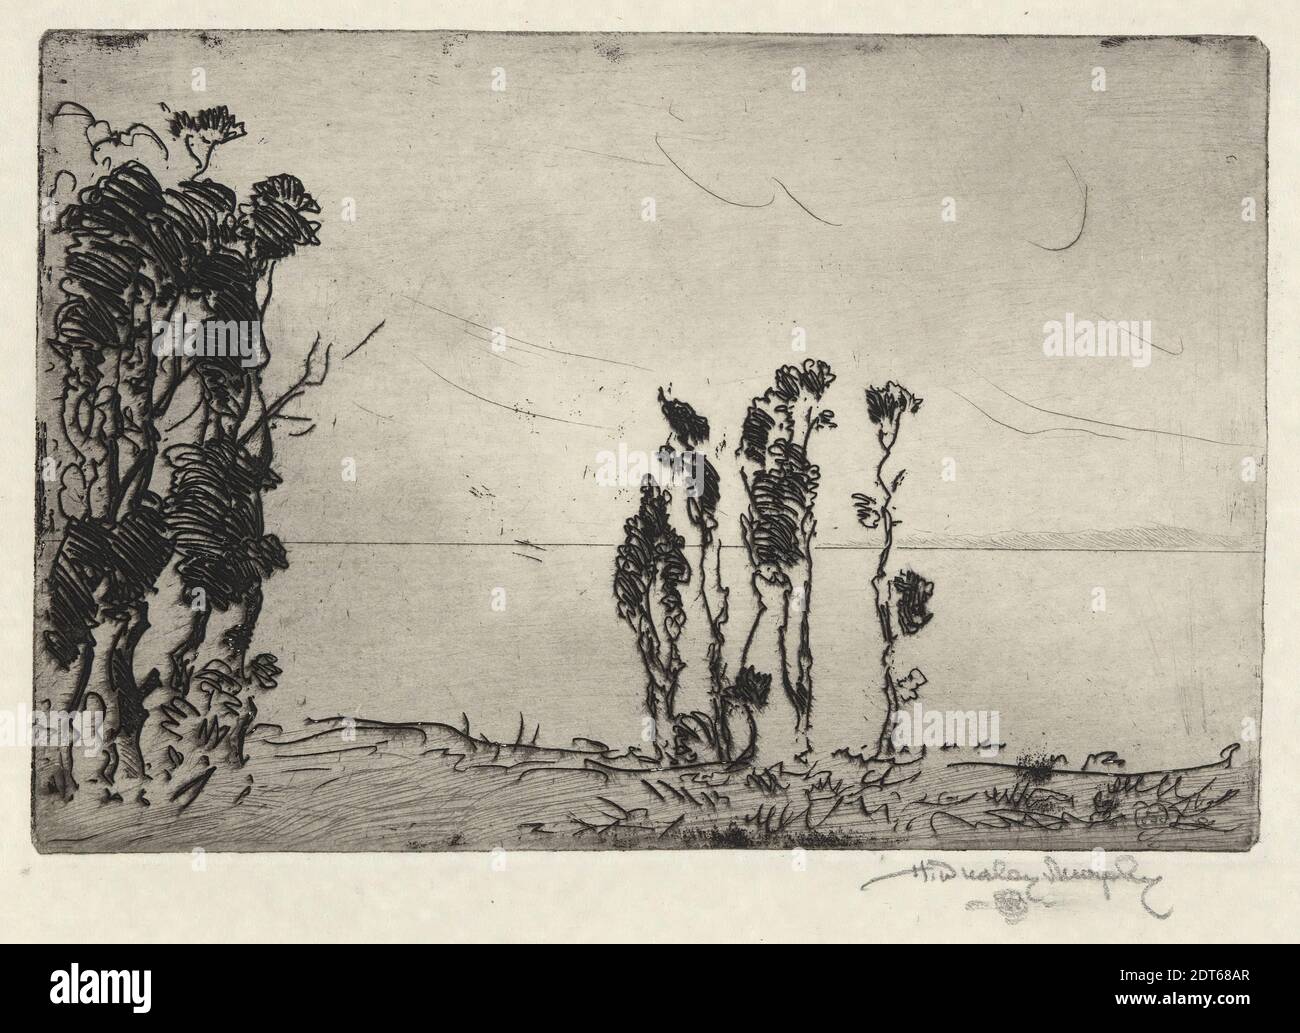 Artista: Hermann Dudley Murphy, norteamericano, 1867–1945, paisaje de la costa, grabado, impresión firmada, 3 15/16 × 5 7/8 pulg. (10 × 15 cm), fabricado en Estados Unidos, América, siglo 19, trabajos en papel - impresiones Foto de stock